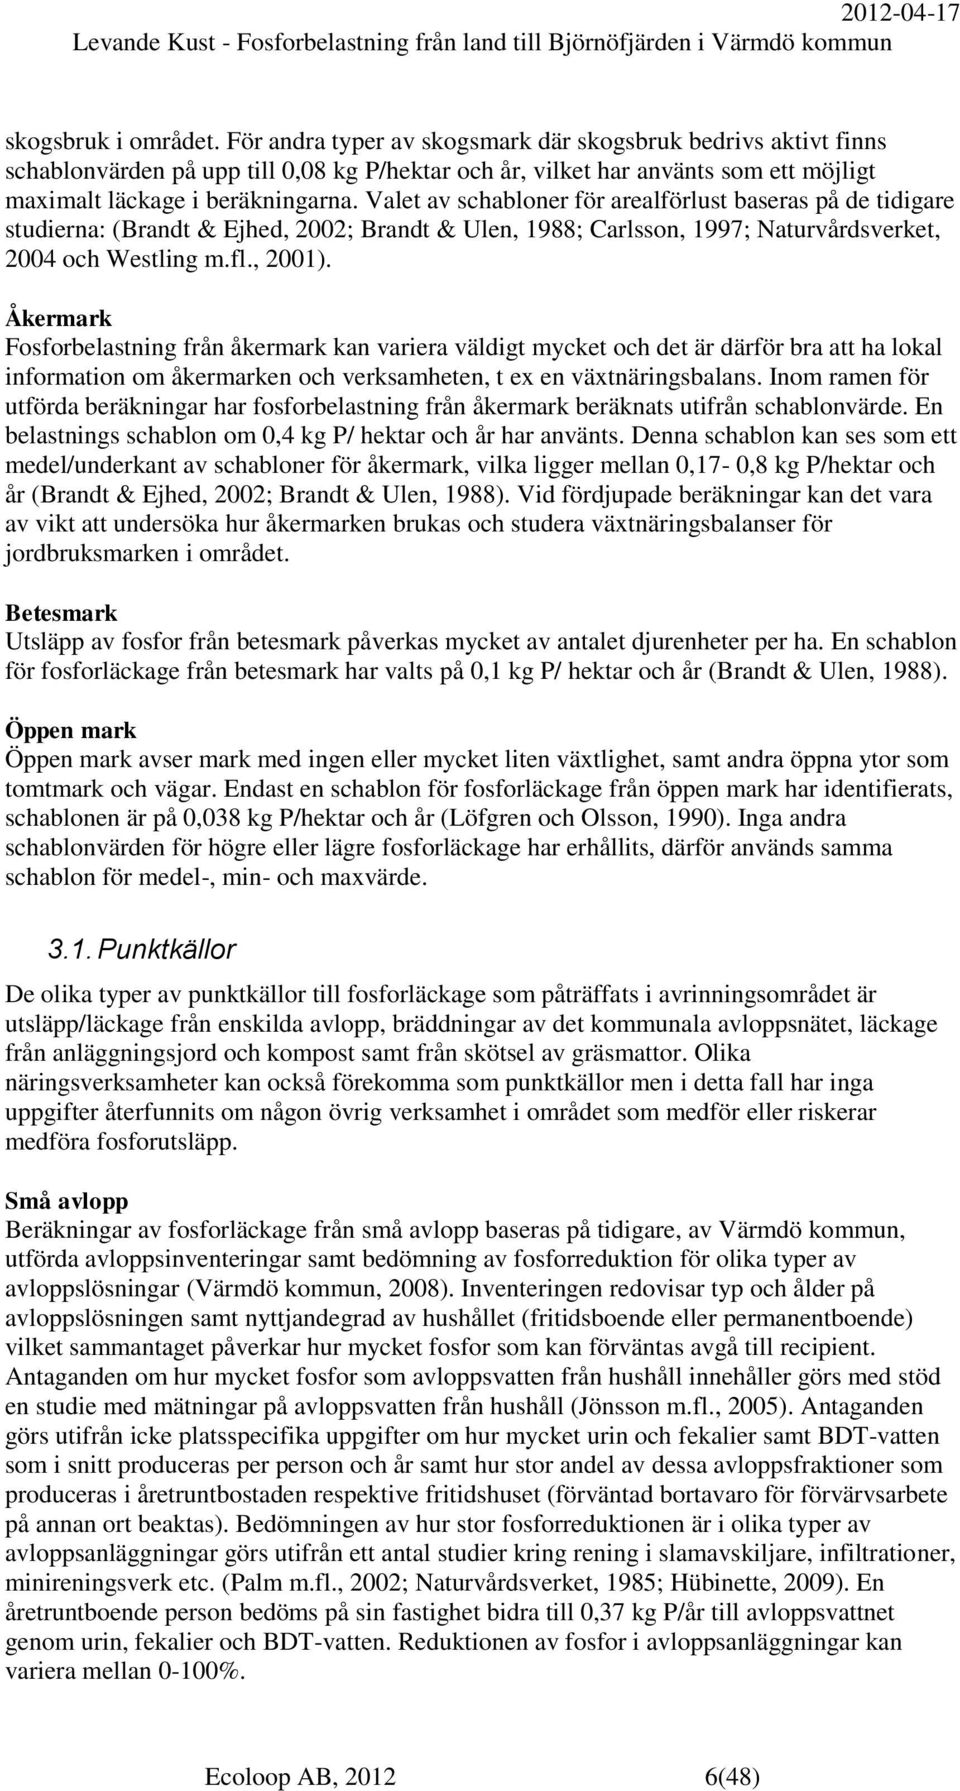 Valet av schabloner för arealförlust baseras på de tidigare studierna: (Brandt & Ejhed, 2002; Brandt & Ulen, 1988; Carlsson, 1997; Naturvårdsverket, 2004 och Westling m.fl., 2001).